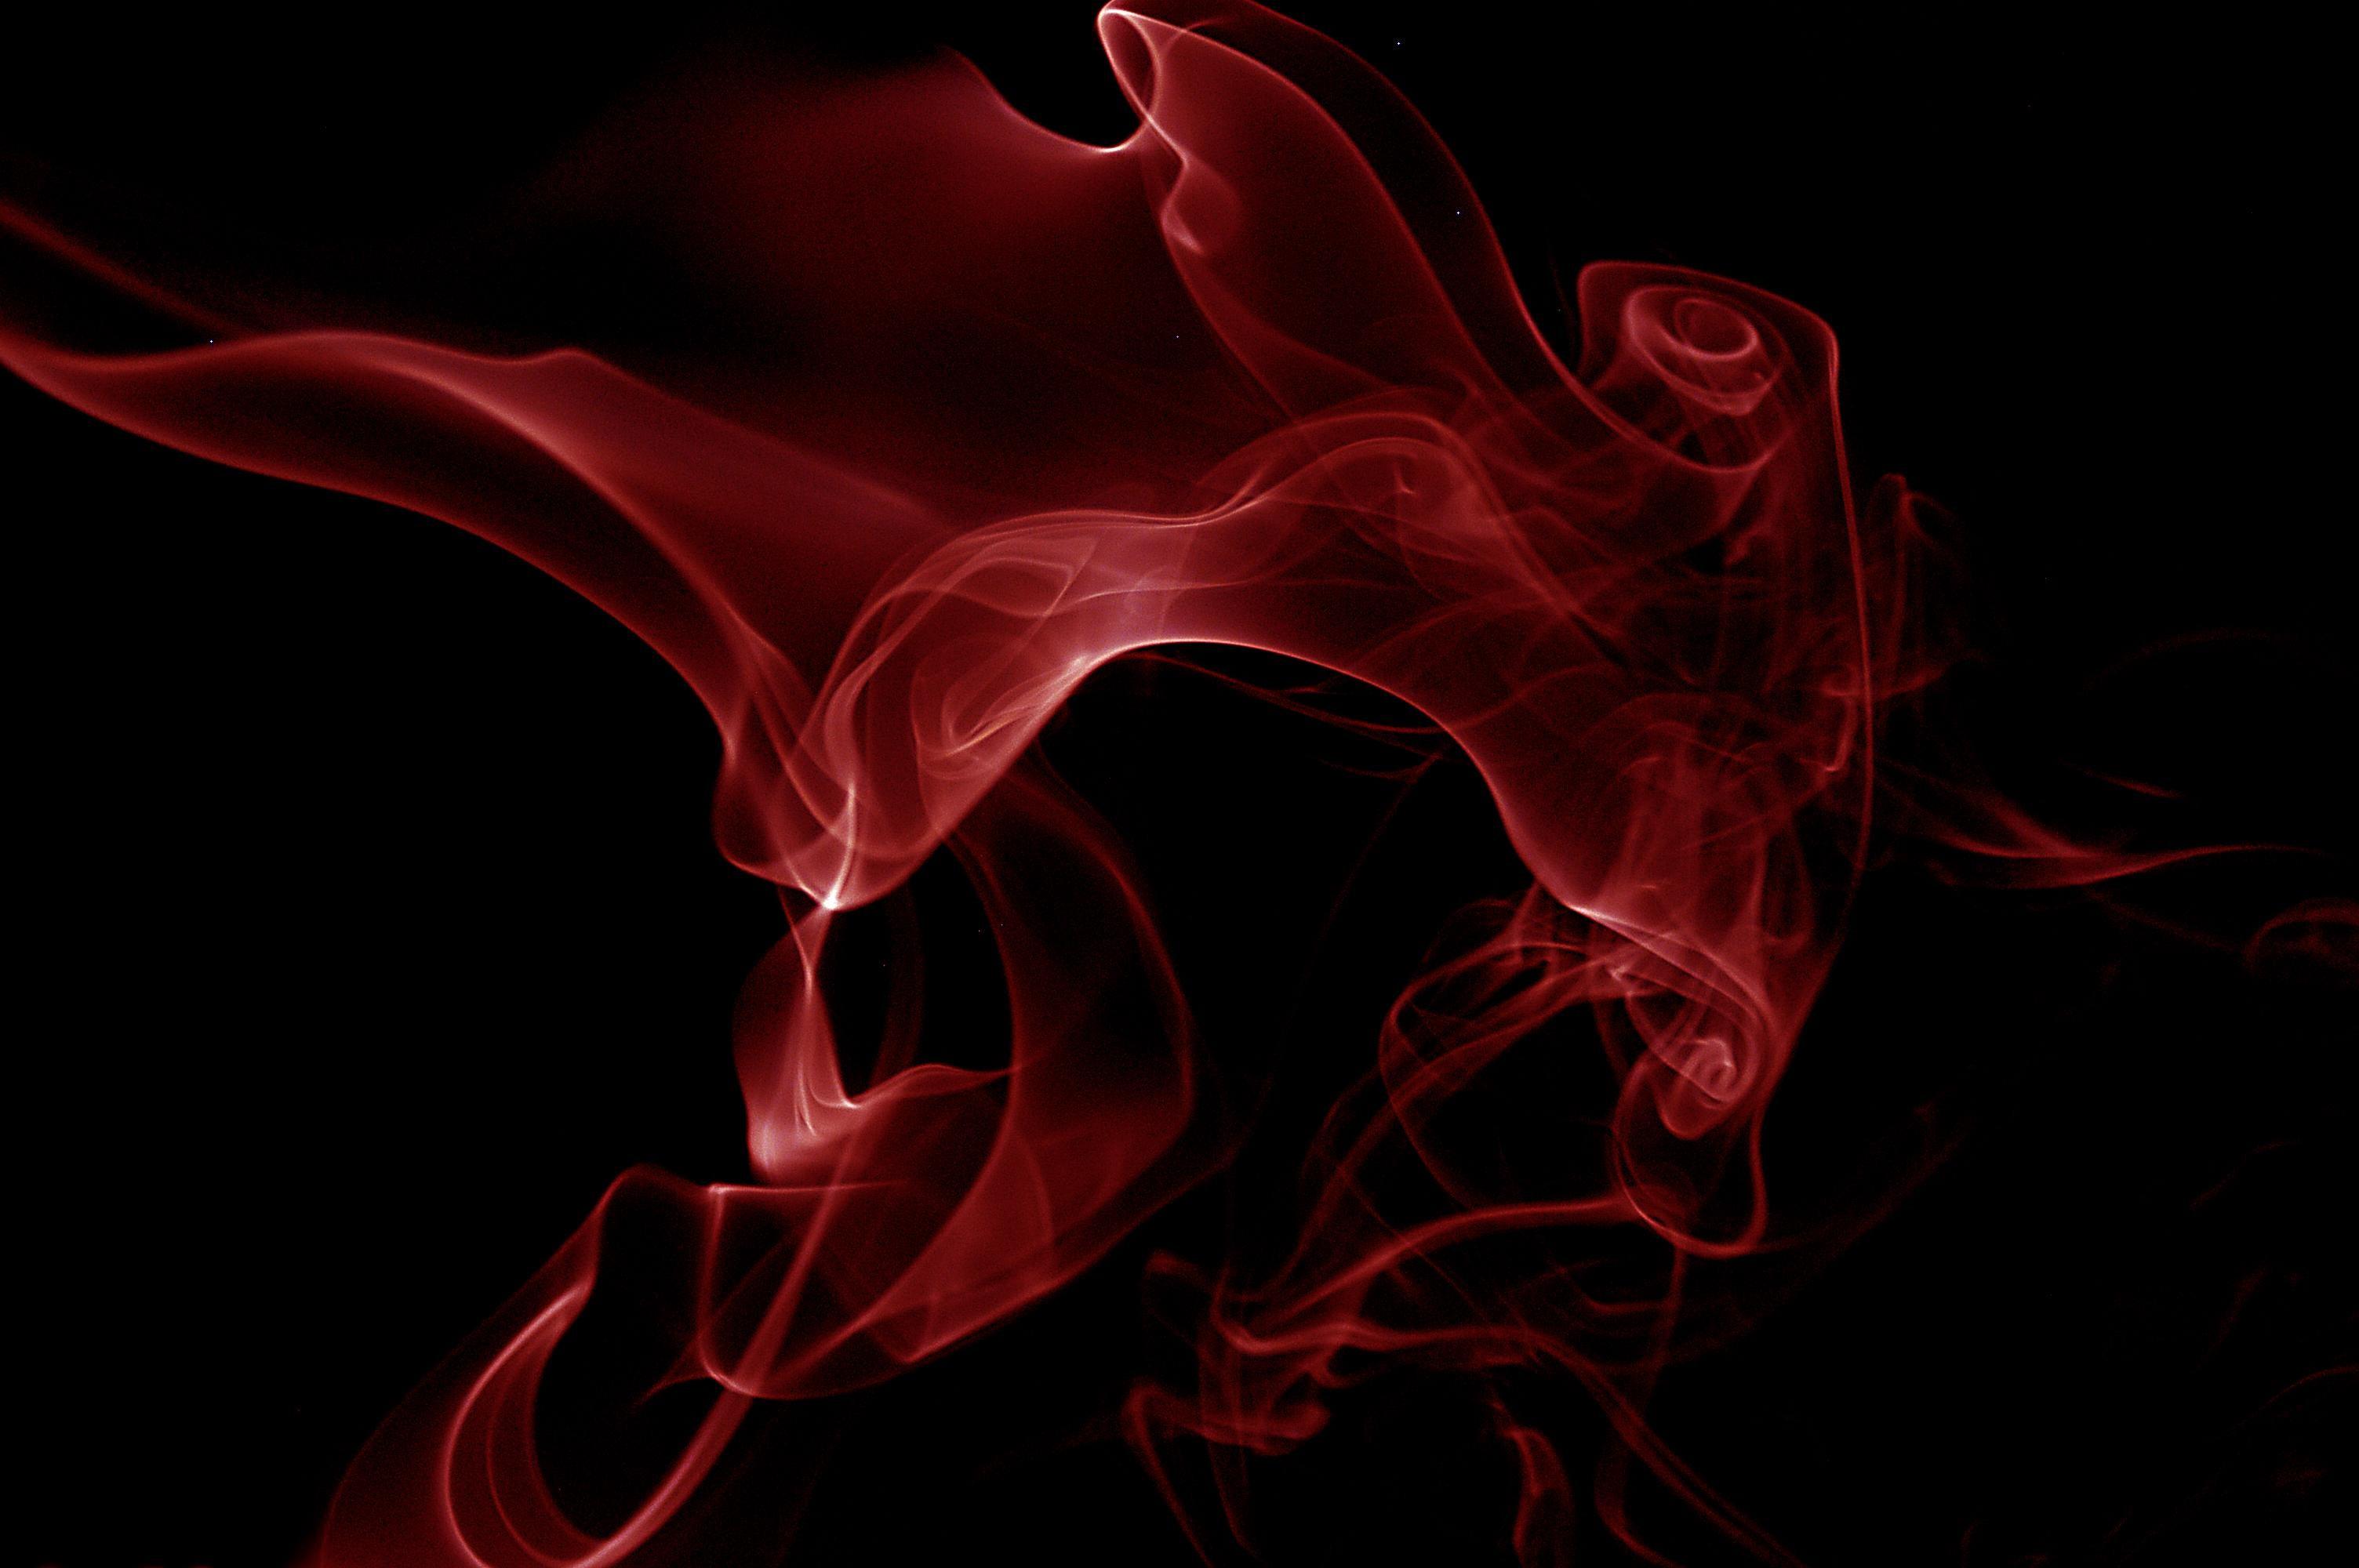 fond d'écran noir et rouge,fumée,rouge,graphique,oeuvre de cg,conception graphique